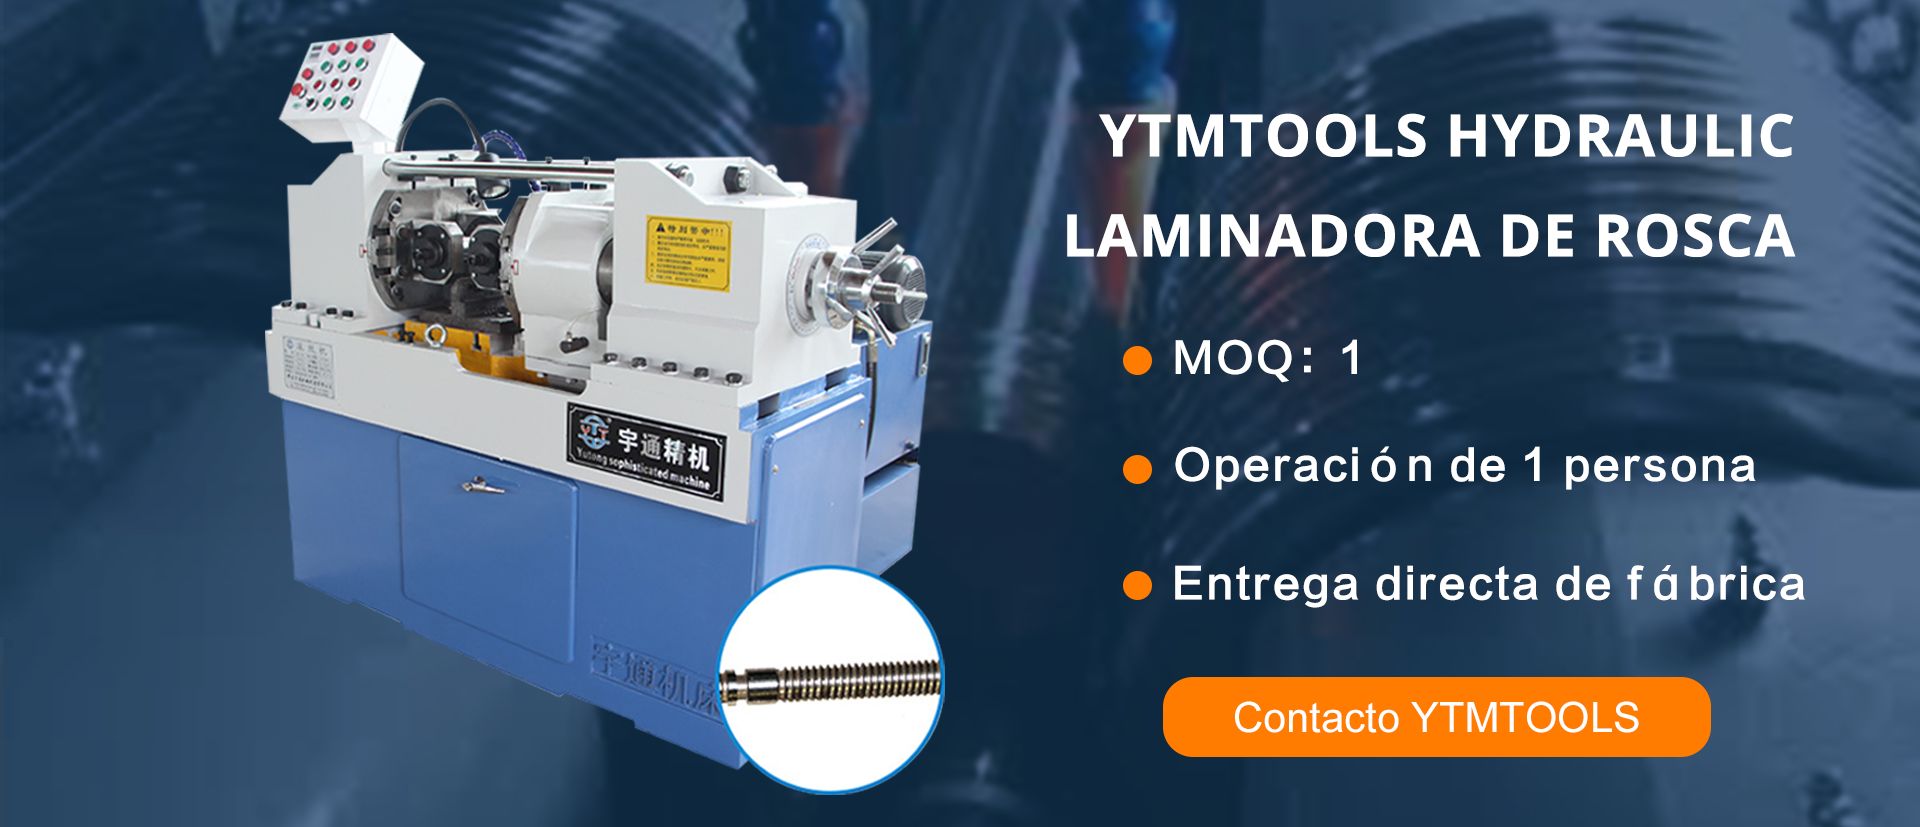 Гидравлический баннер YTMTOOLS Laminadora de Rosca